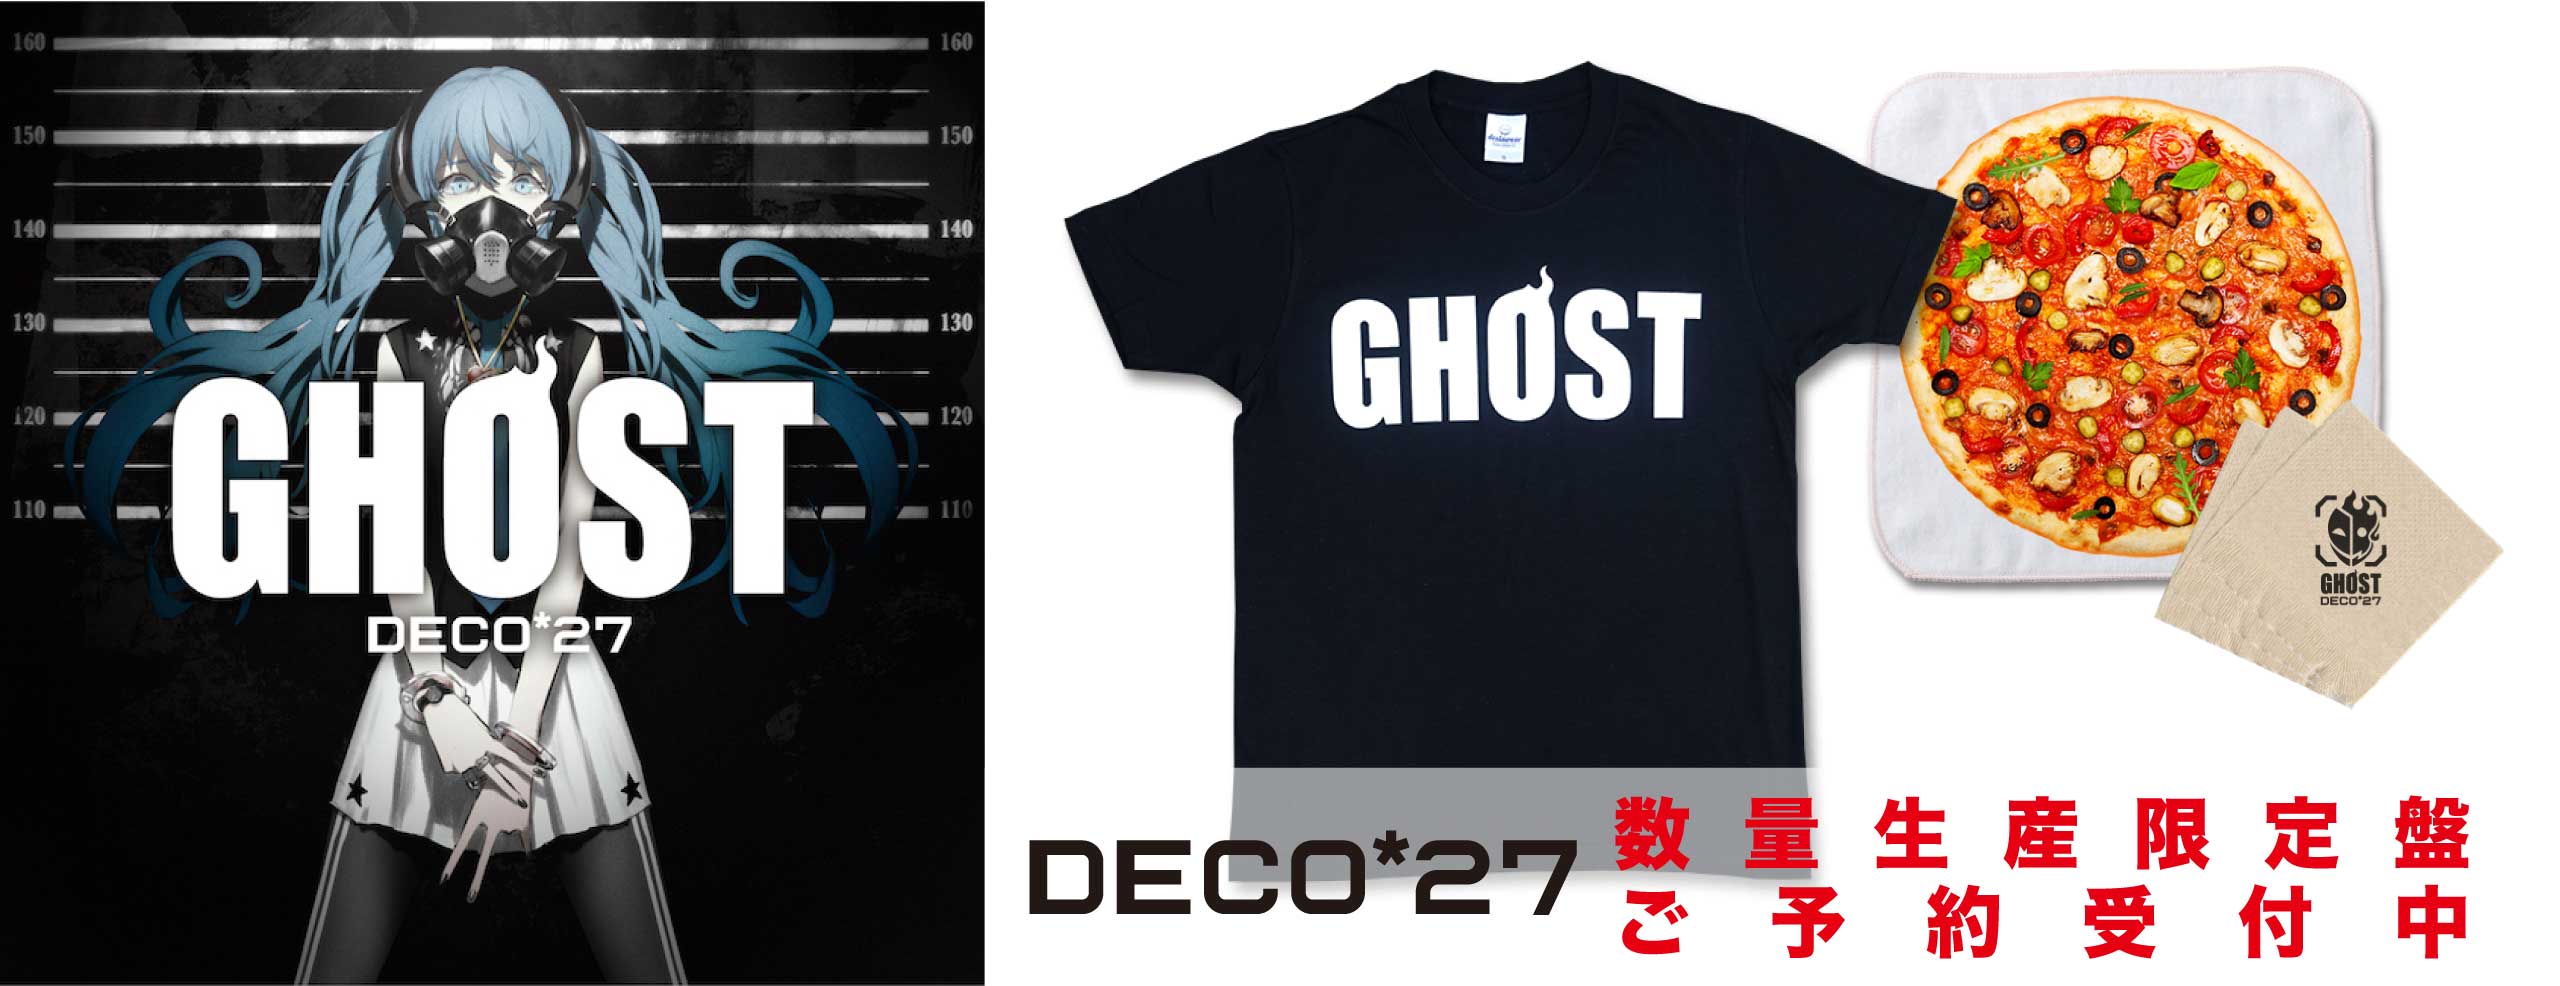 【9月2日(金)〆切】DECO*27最新作『GHOST』数量生産限定盤の予約受付中